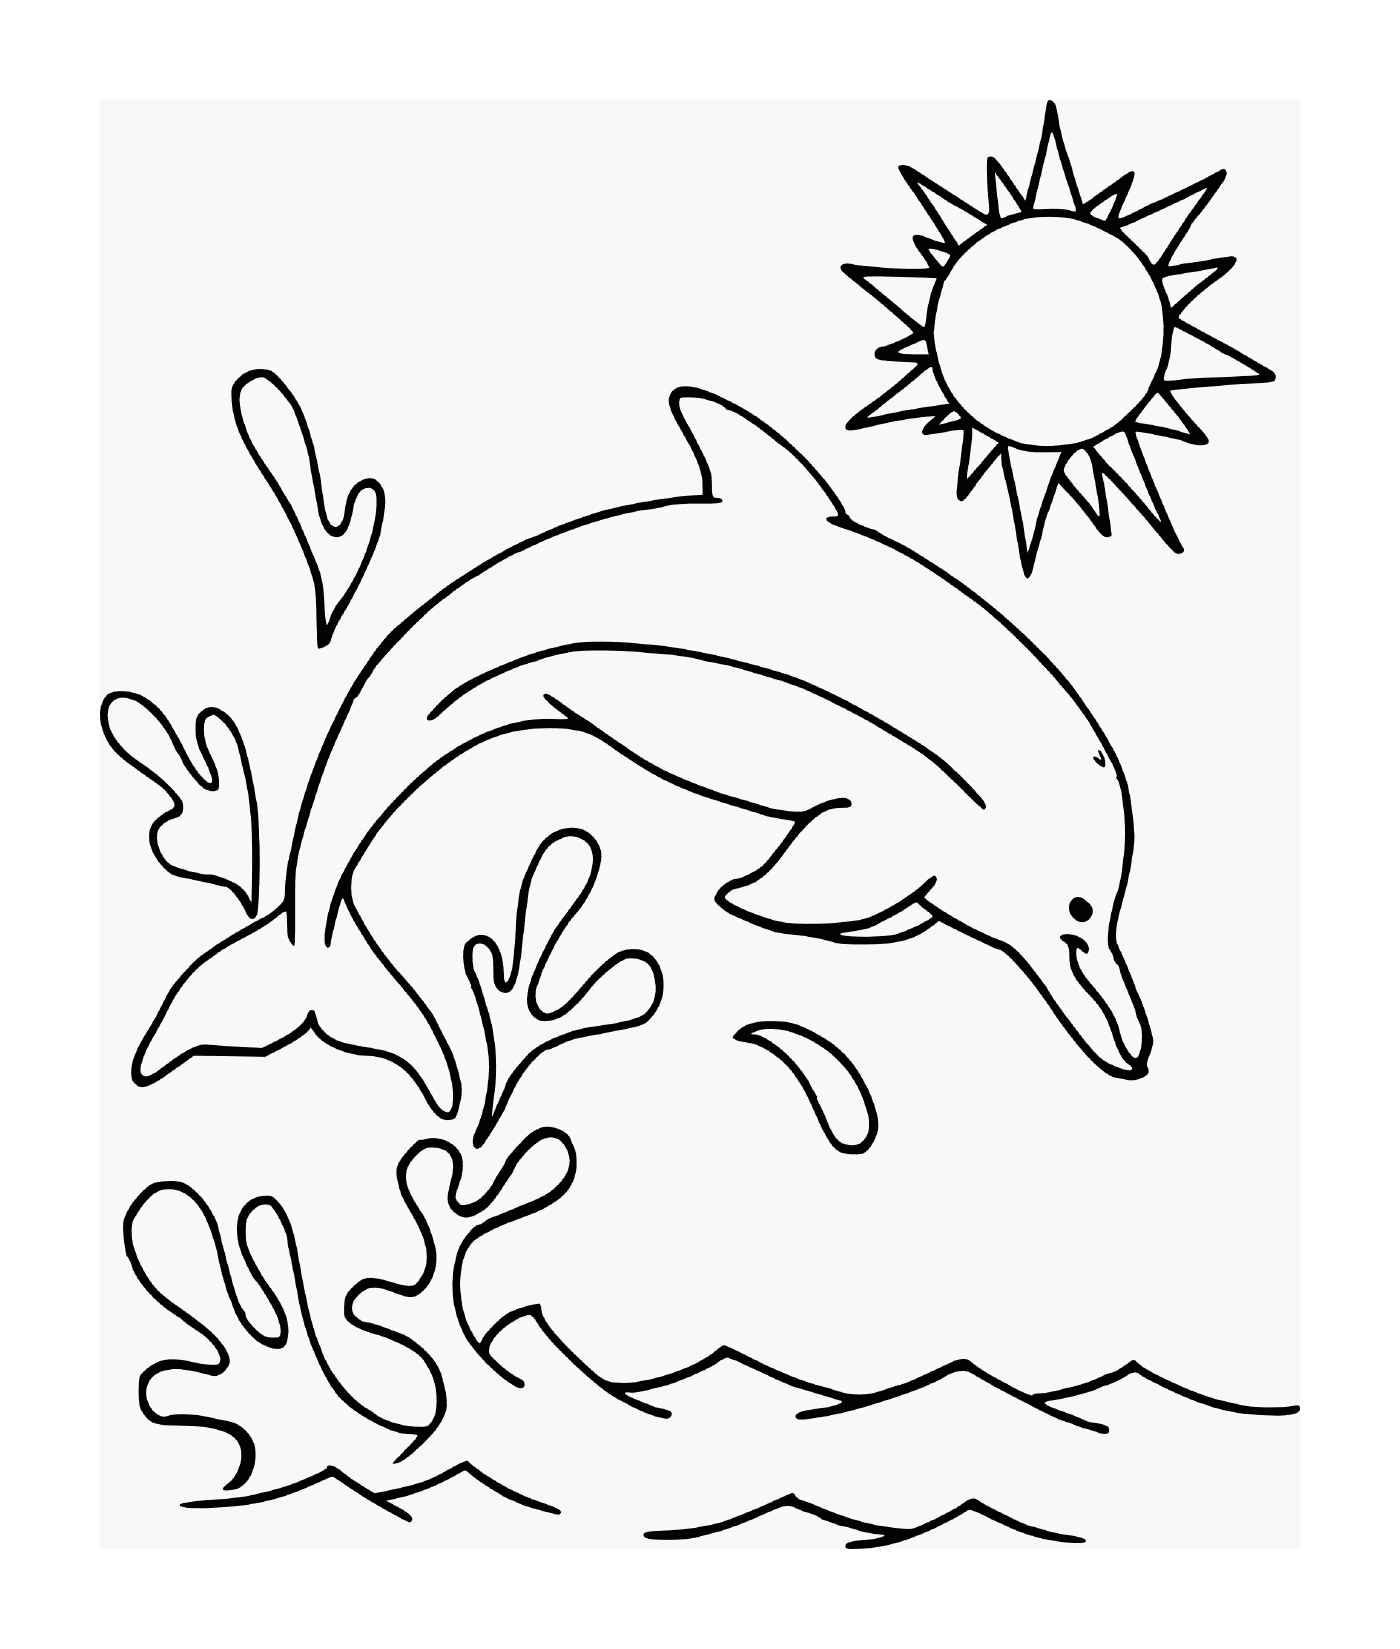  Дельфин прыгнул в воду под солнцем 